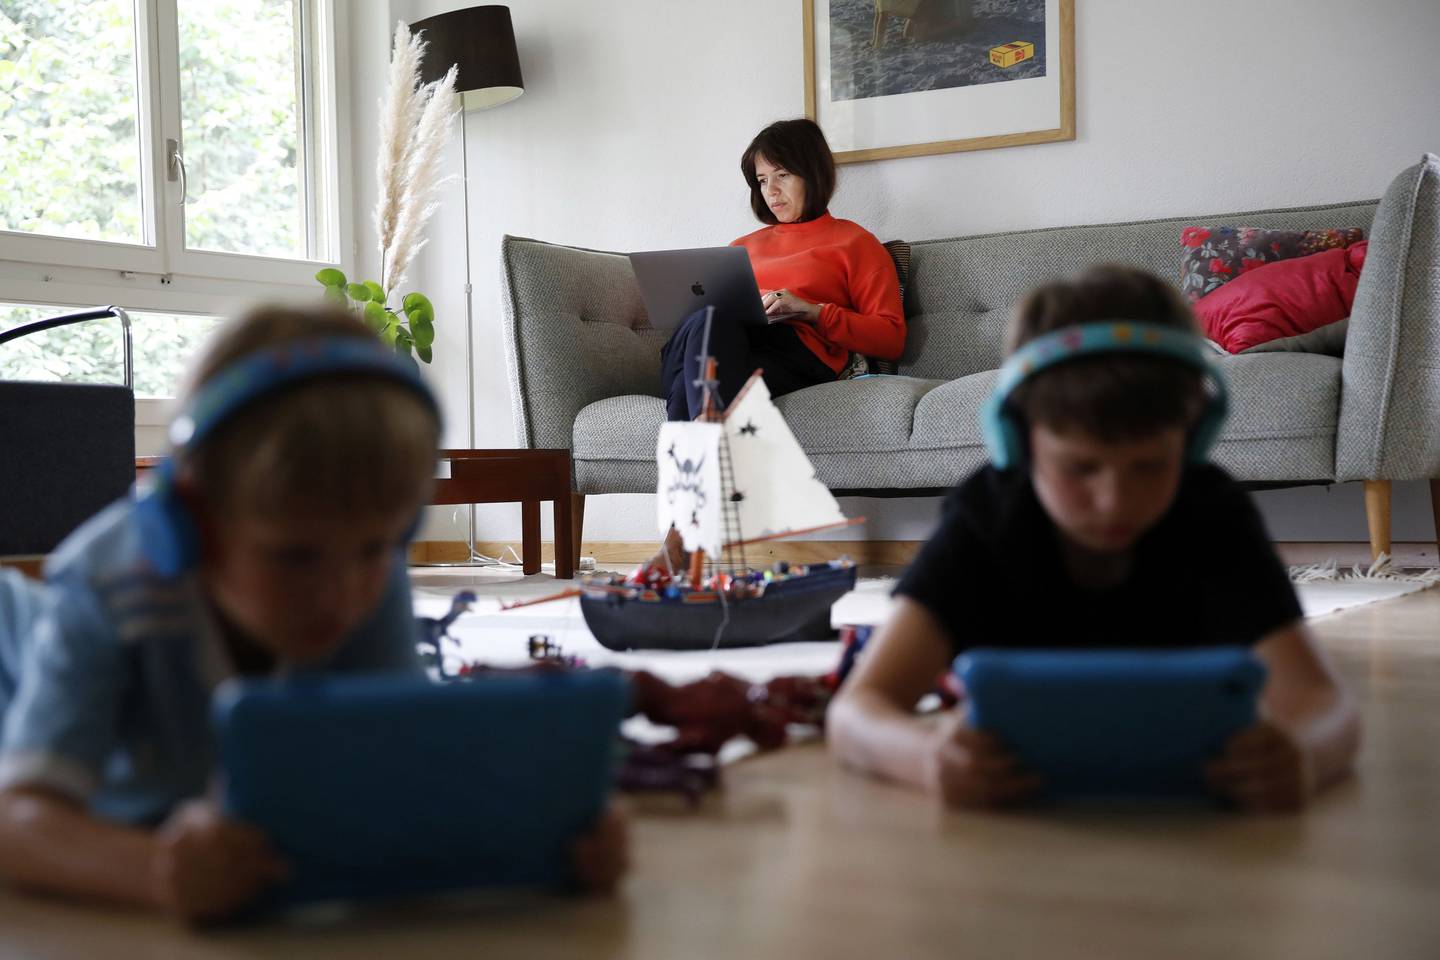 Una mujer trabaja en una computadora portátil de Apple Inc. en el sofá mientras los niños utilizan dispositivos de tableta, en Berna, Suiza, el miércoles 19 de agosto de 2020.